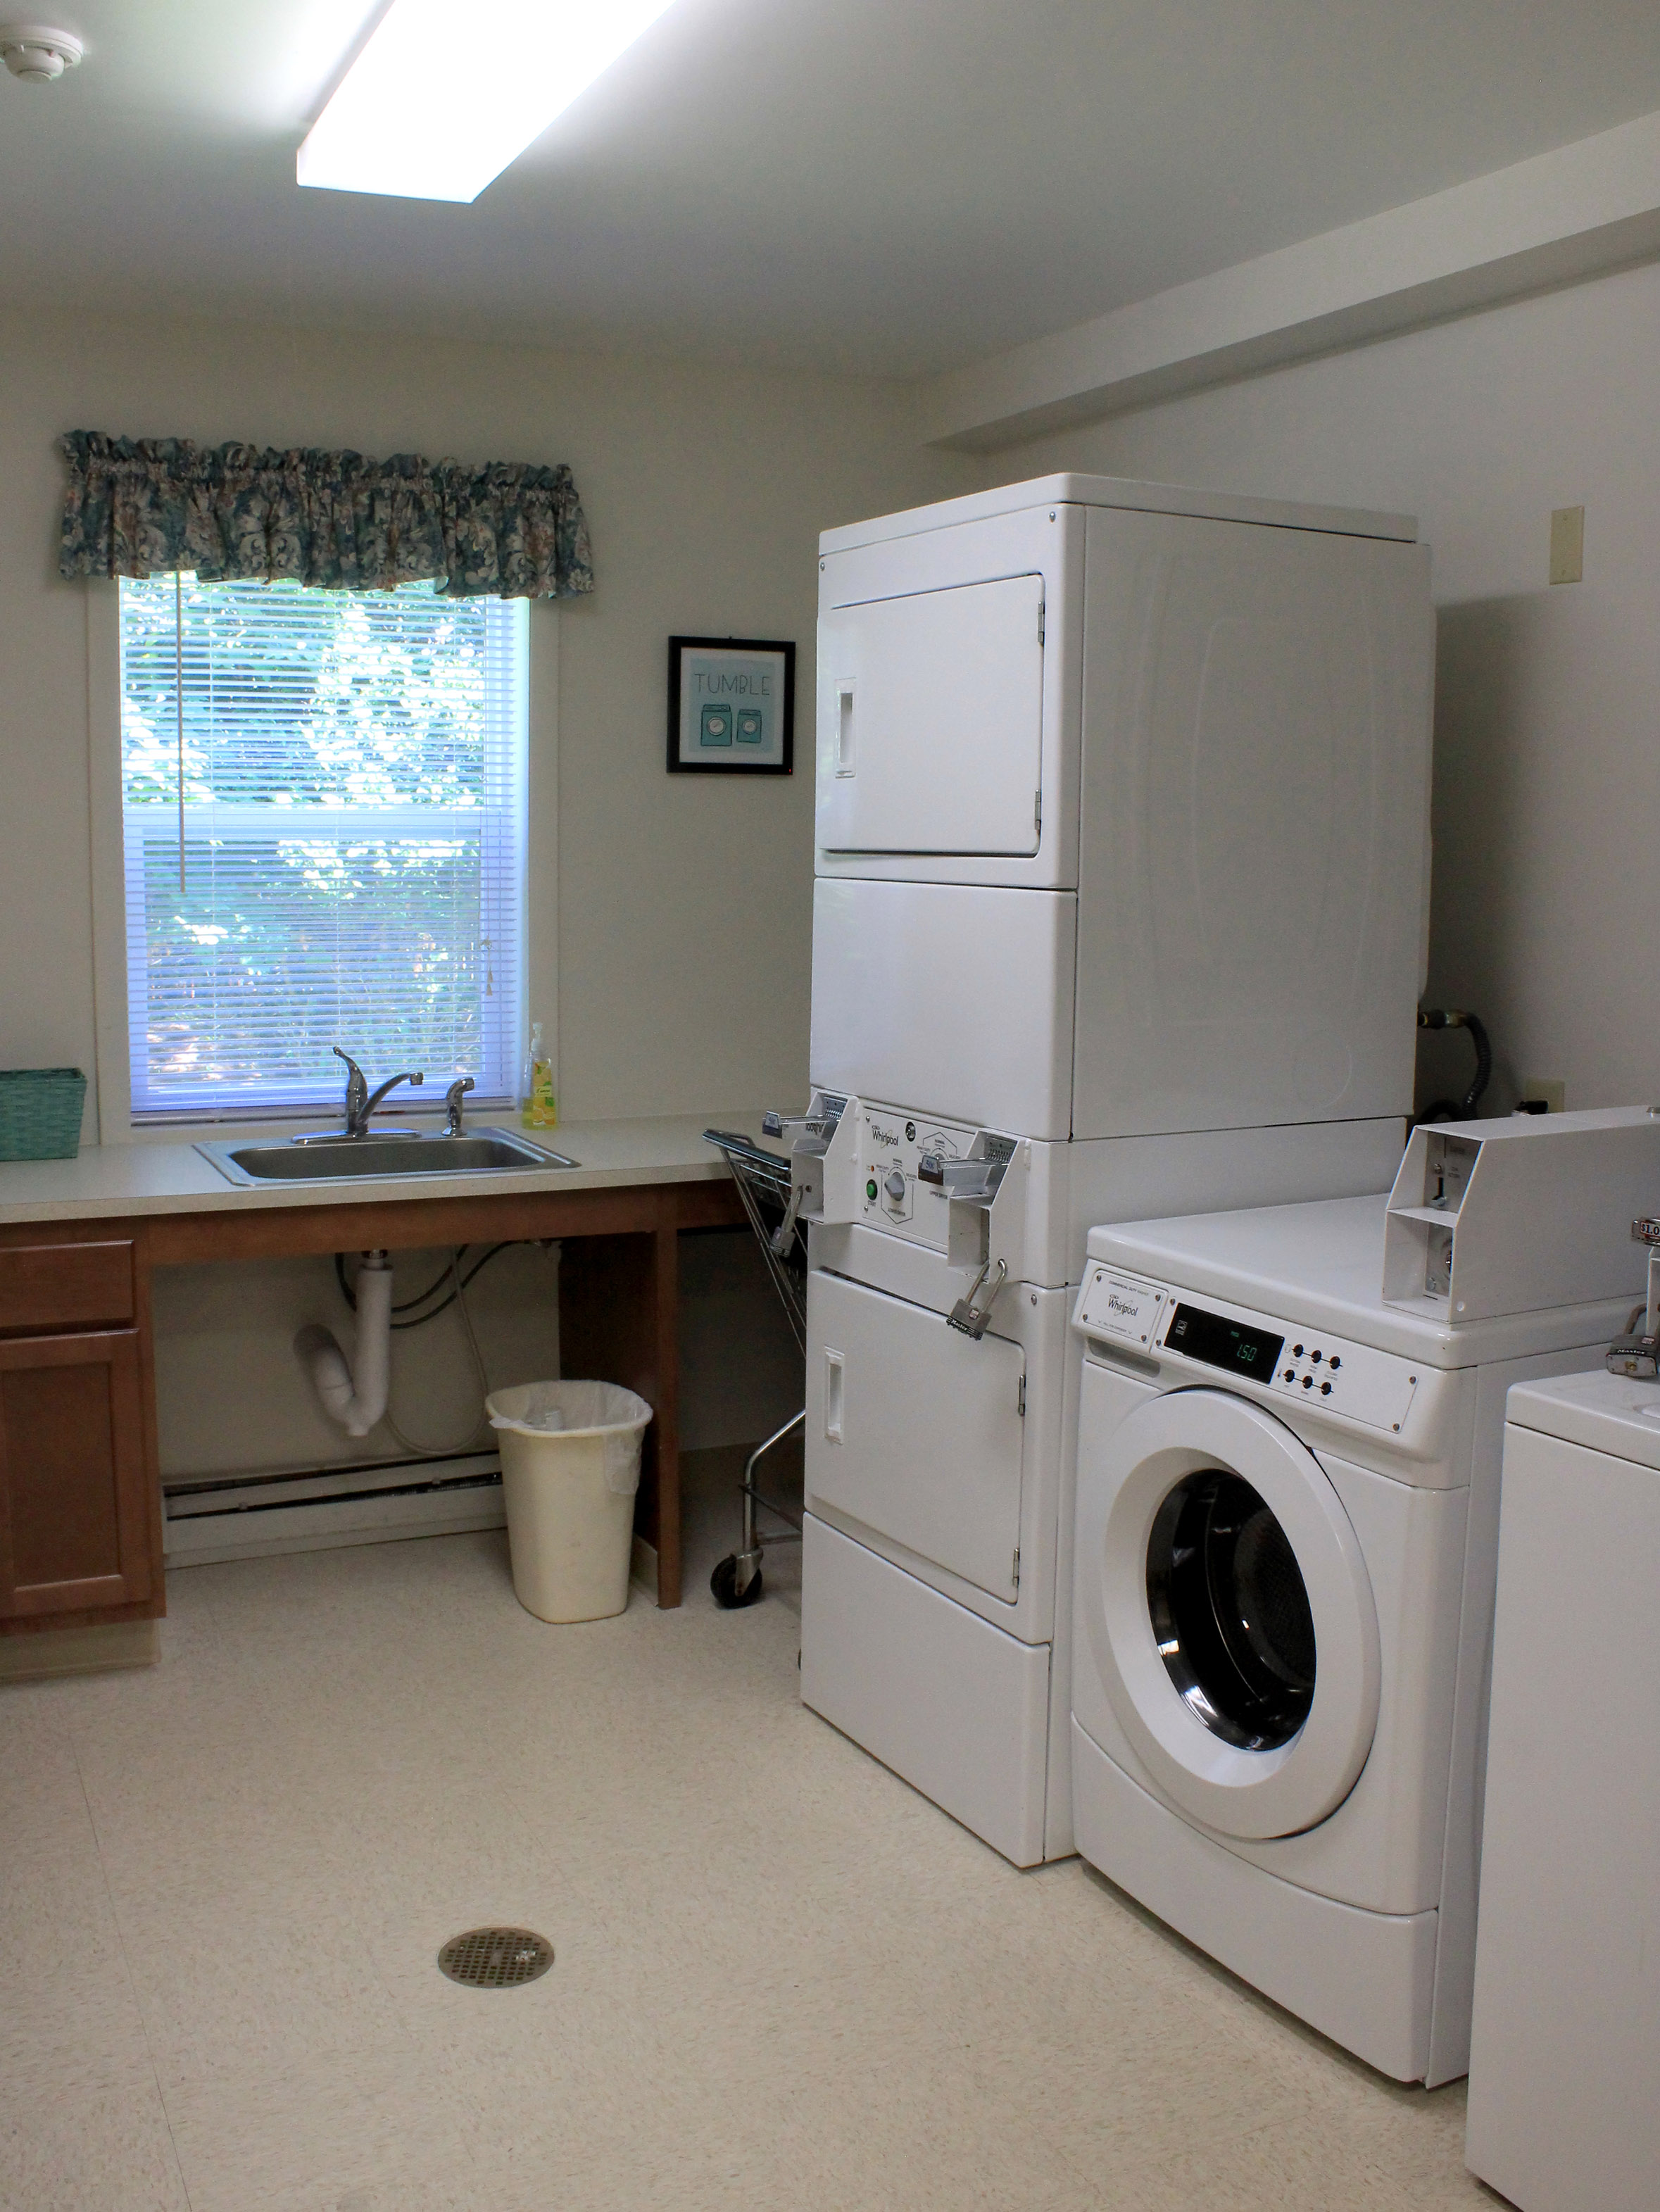 property management company syracuse ny image of applewood manor community laundry room